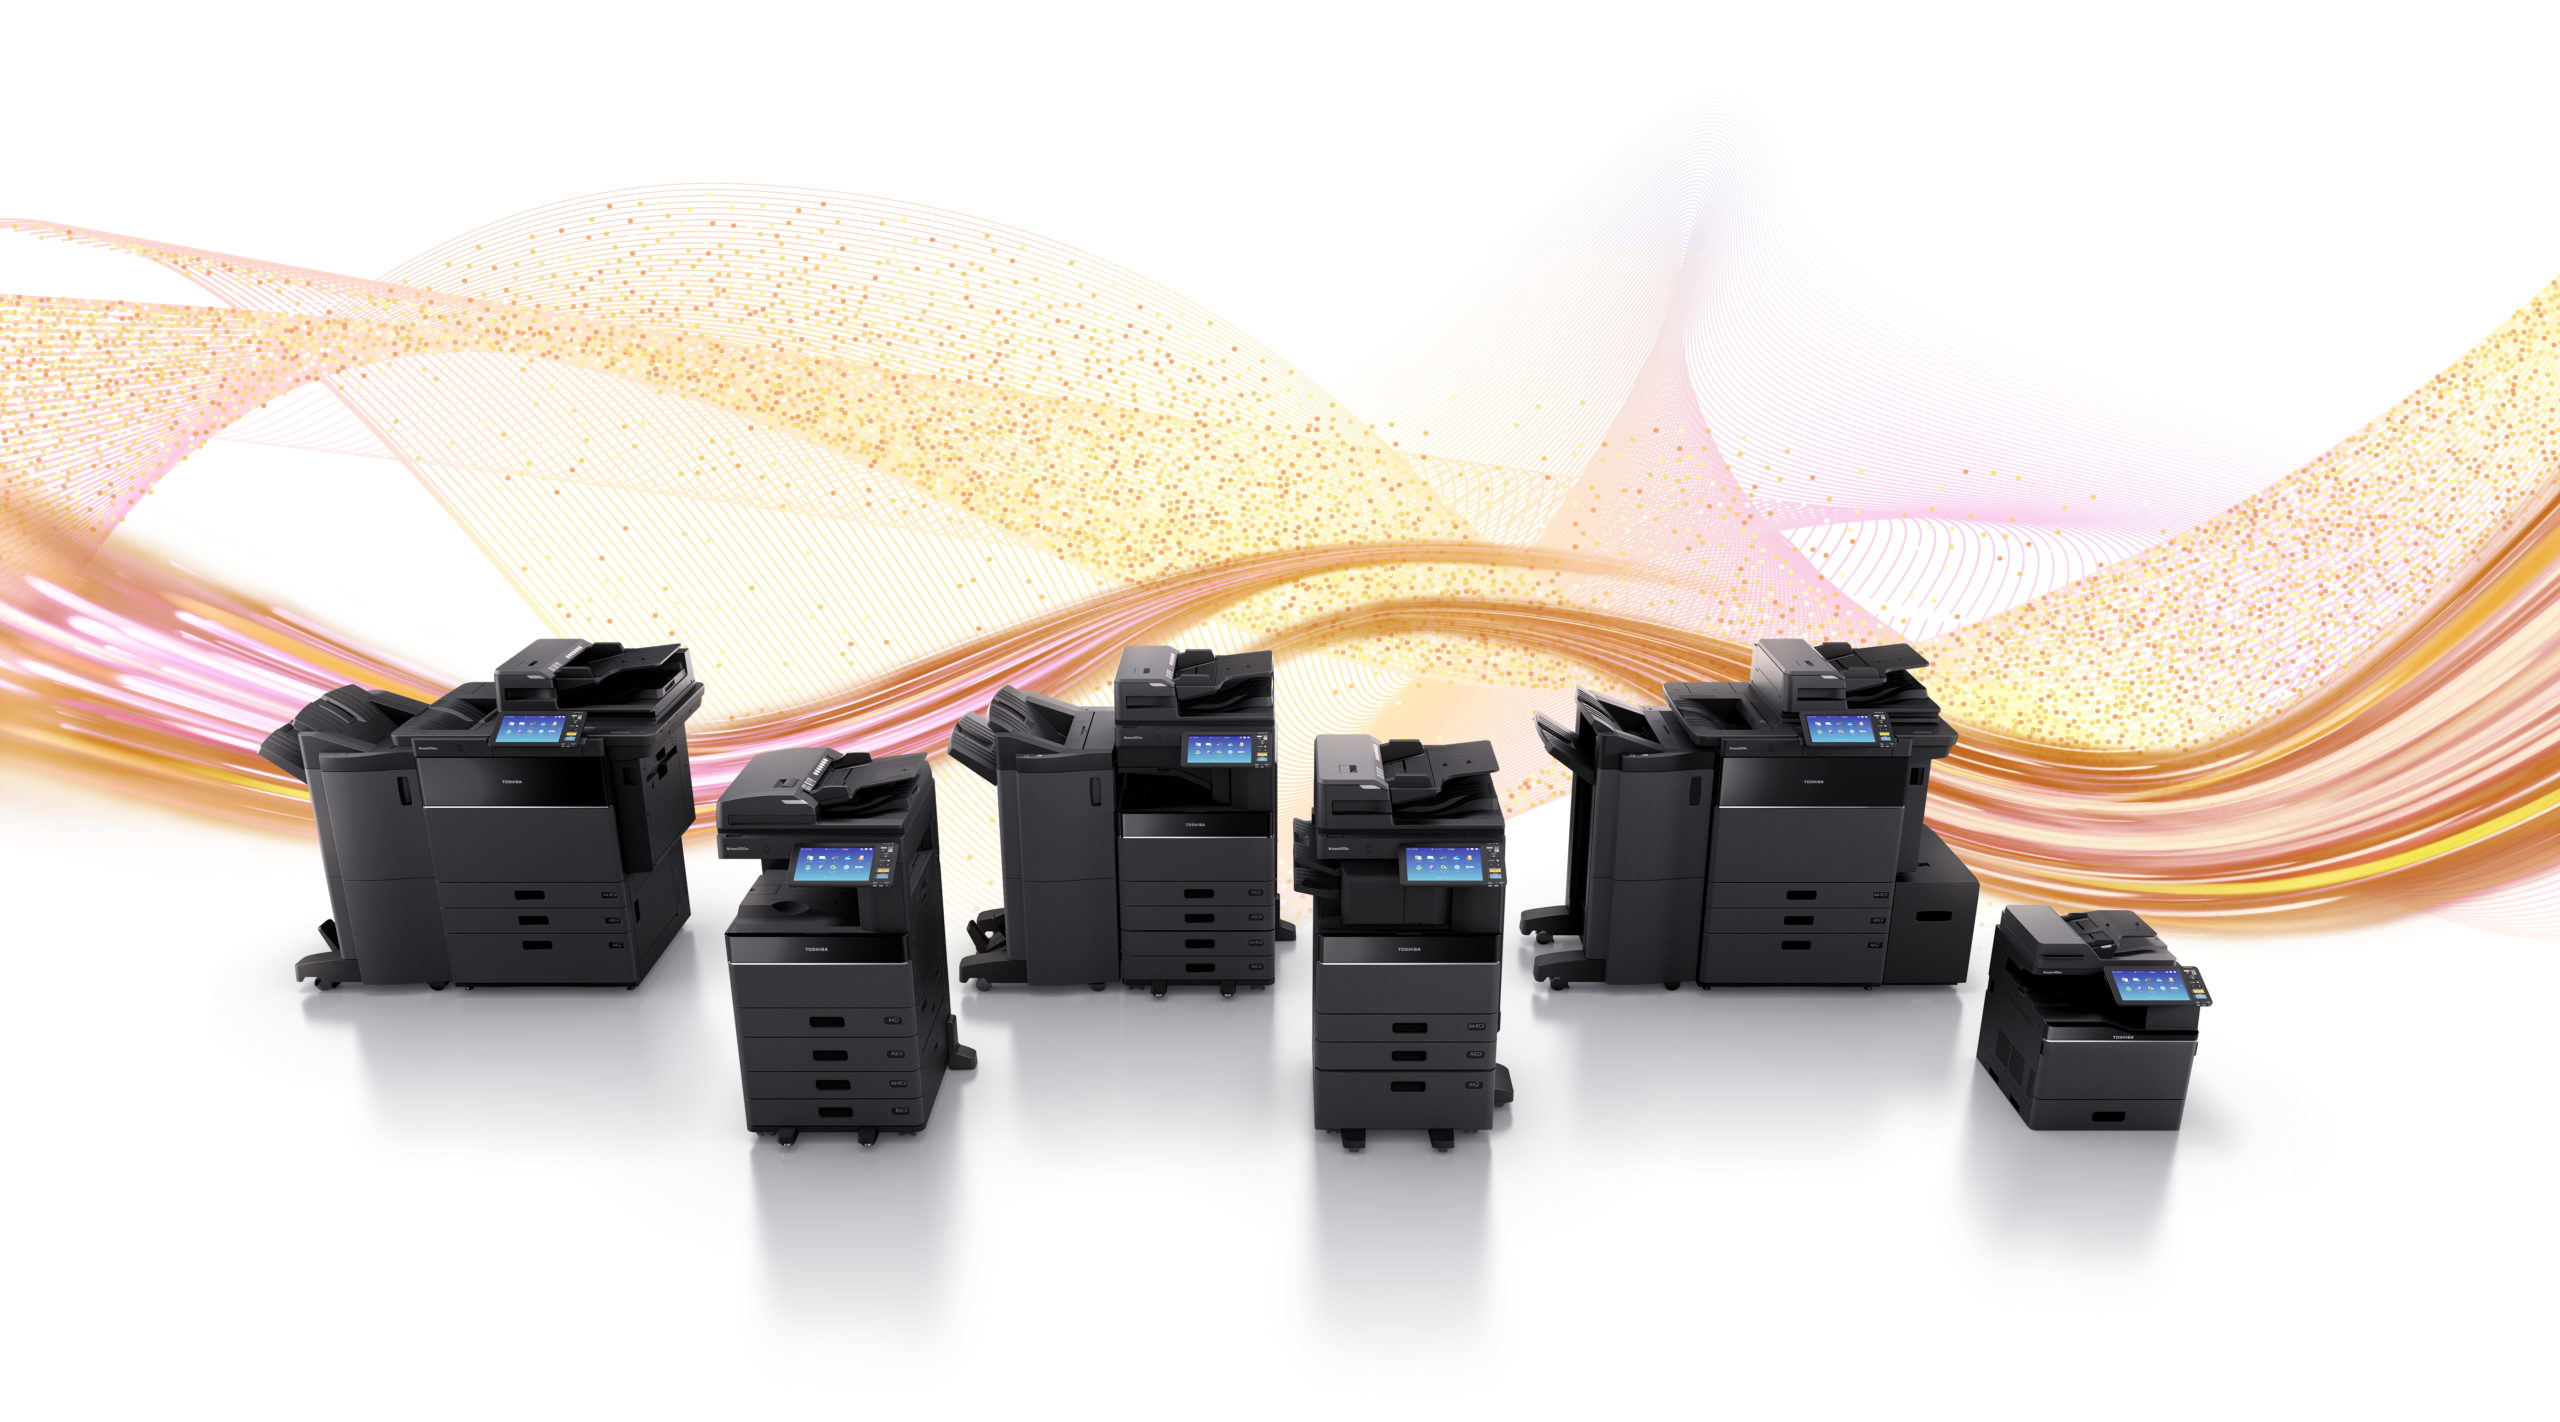 image montrant une gamme de copieurs et imprimantes Toshiba